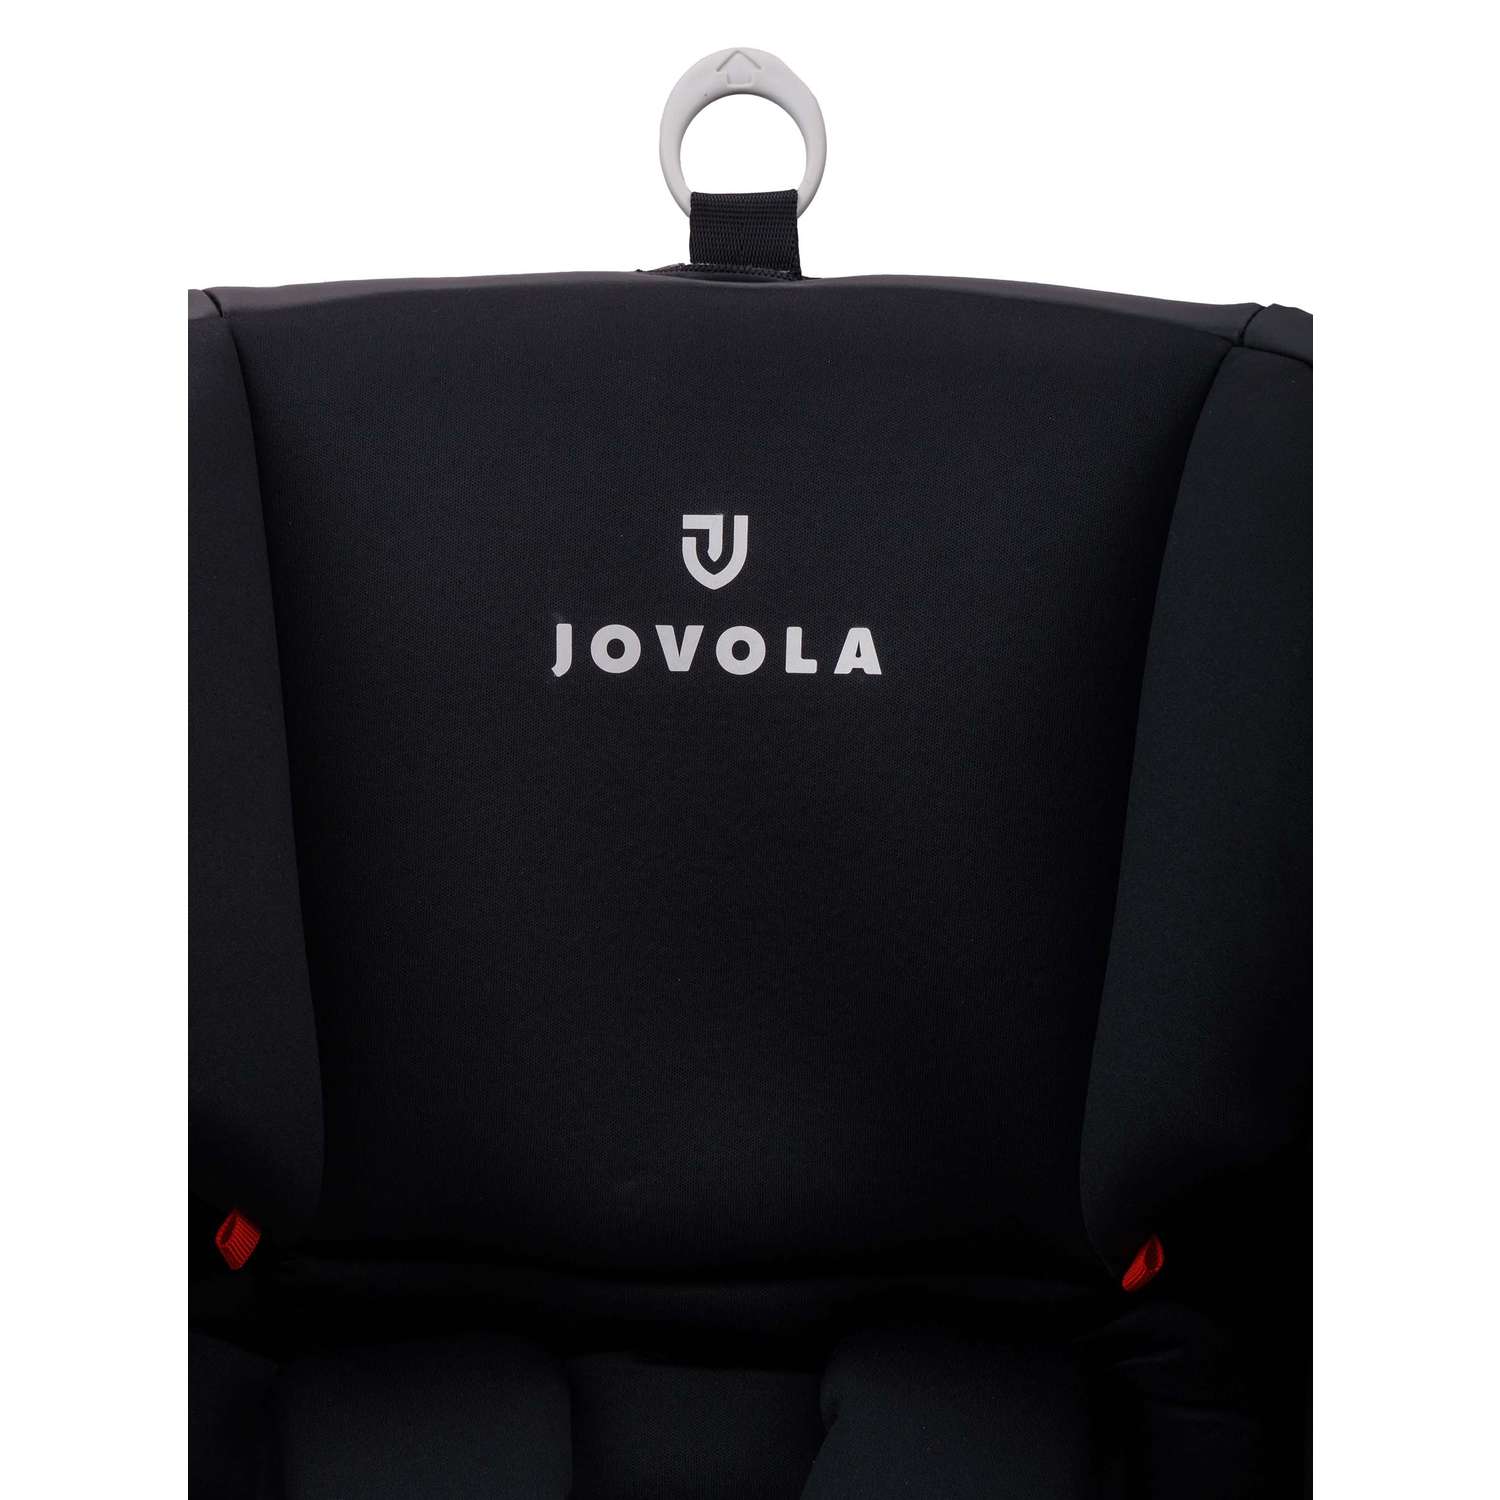 Автокресло JOVOLA I-TRAVEL ISOFIX группа 0+1+2+3 (0-36 кг) черный - фото 29